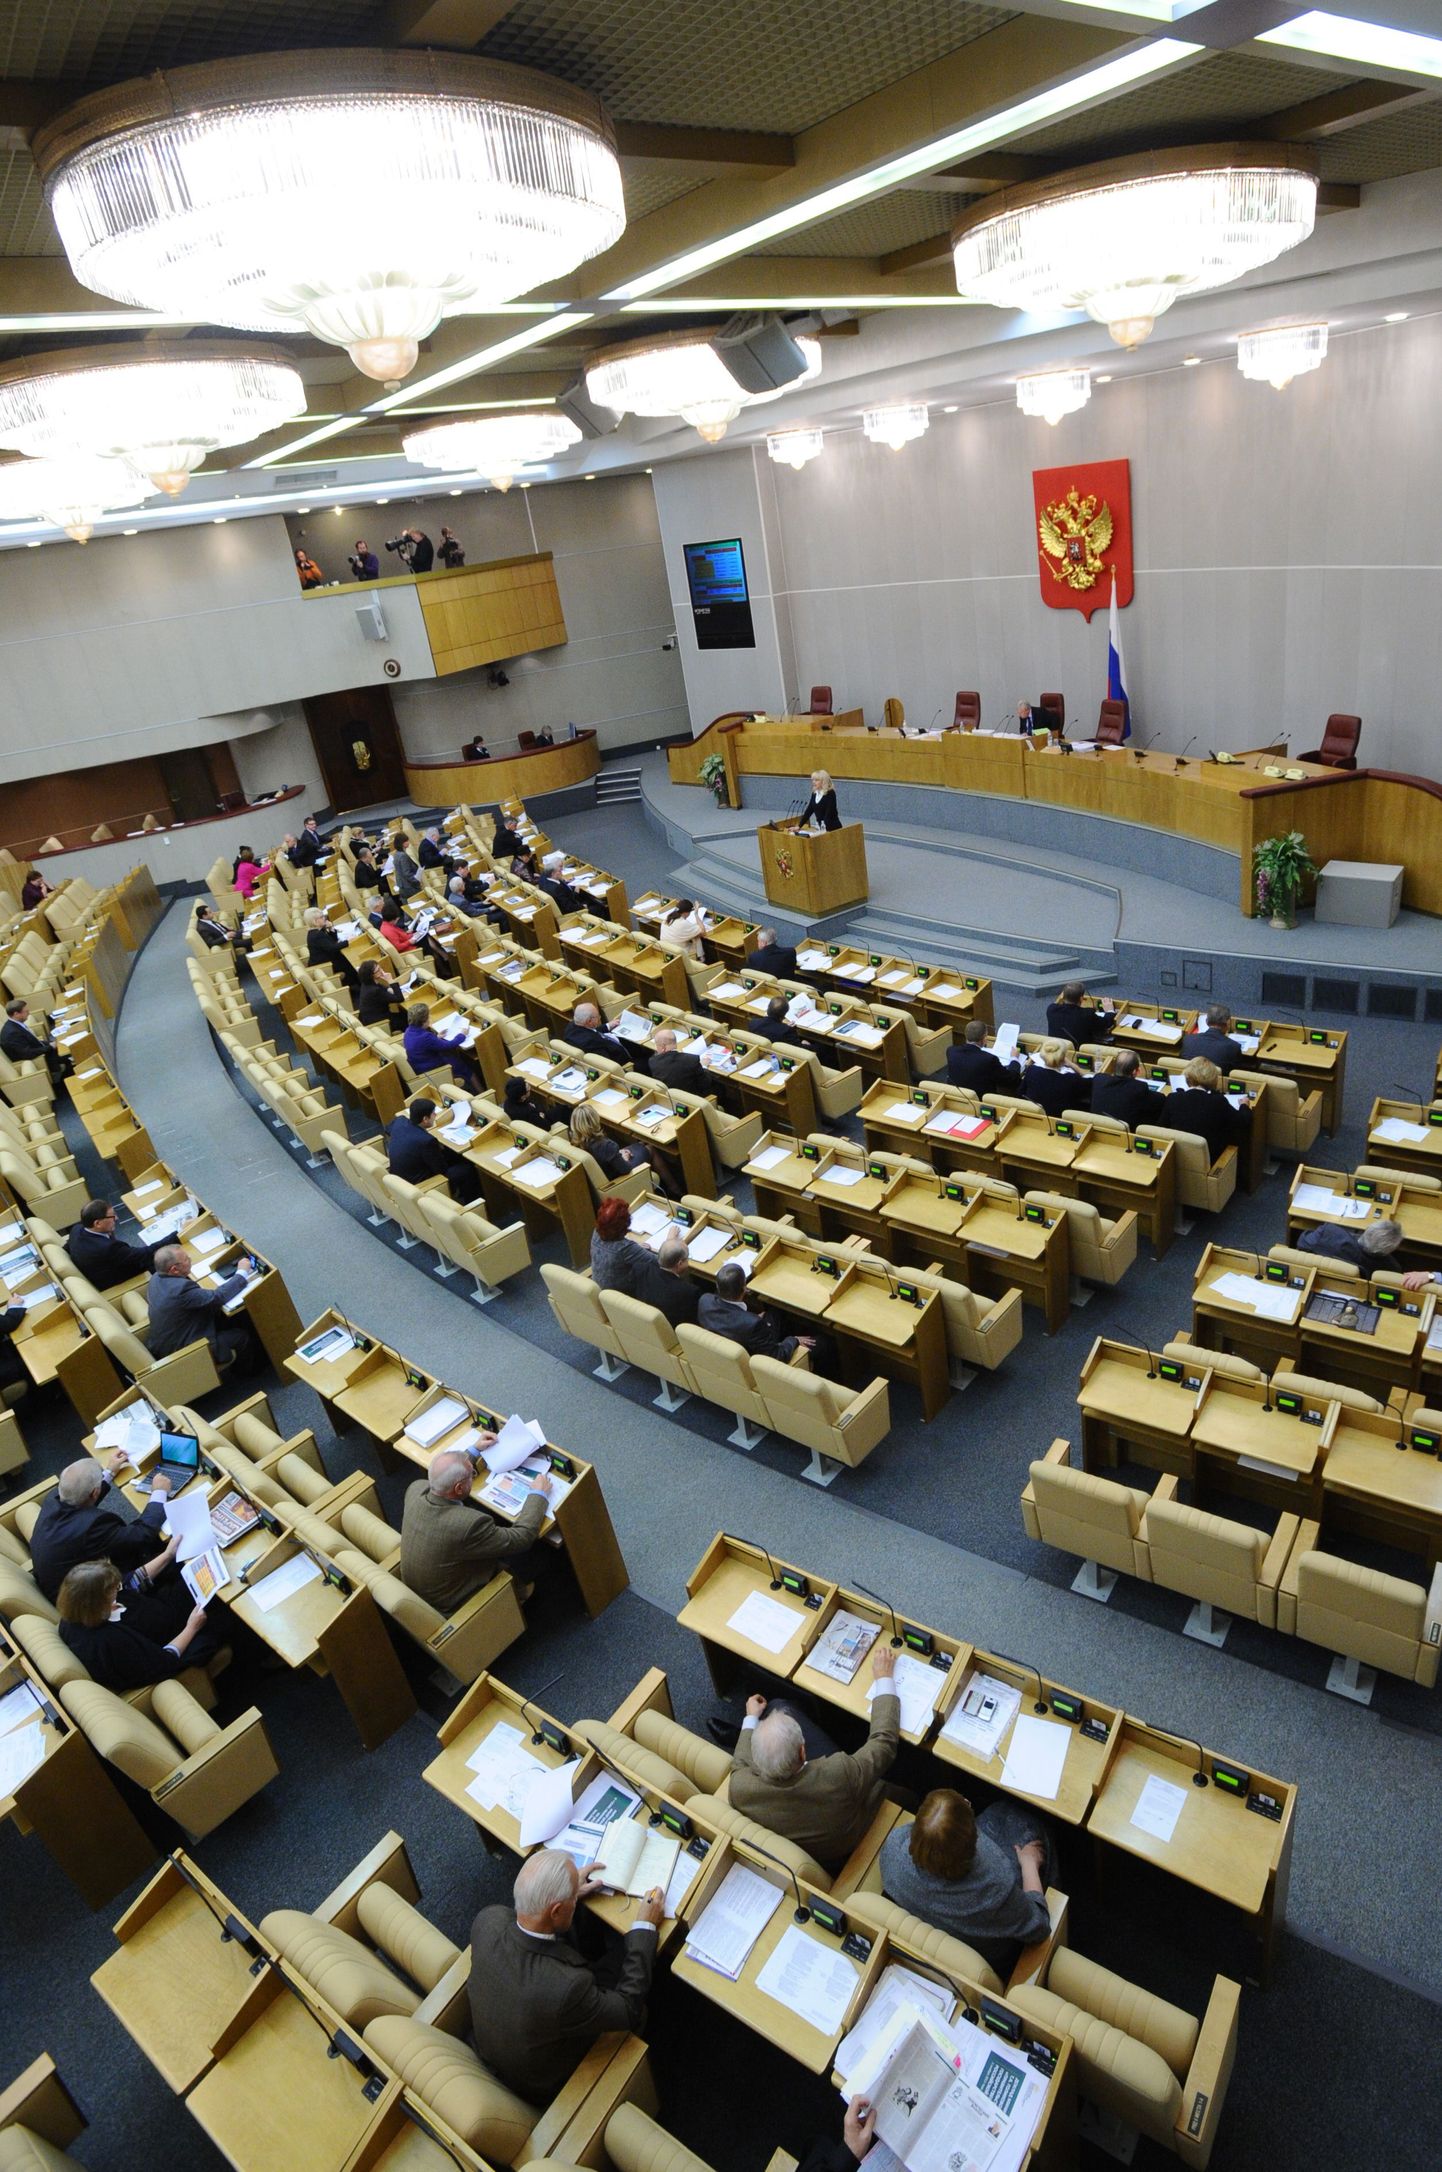 Vene riigiduuma istungitesaal, kuhu pärast 4. detsembri valimisi koguneb uus koosseis rahvasaadikuid.